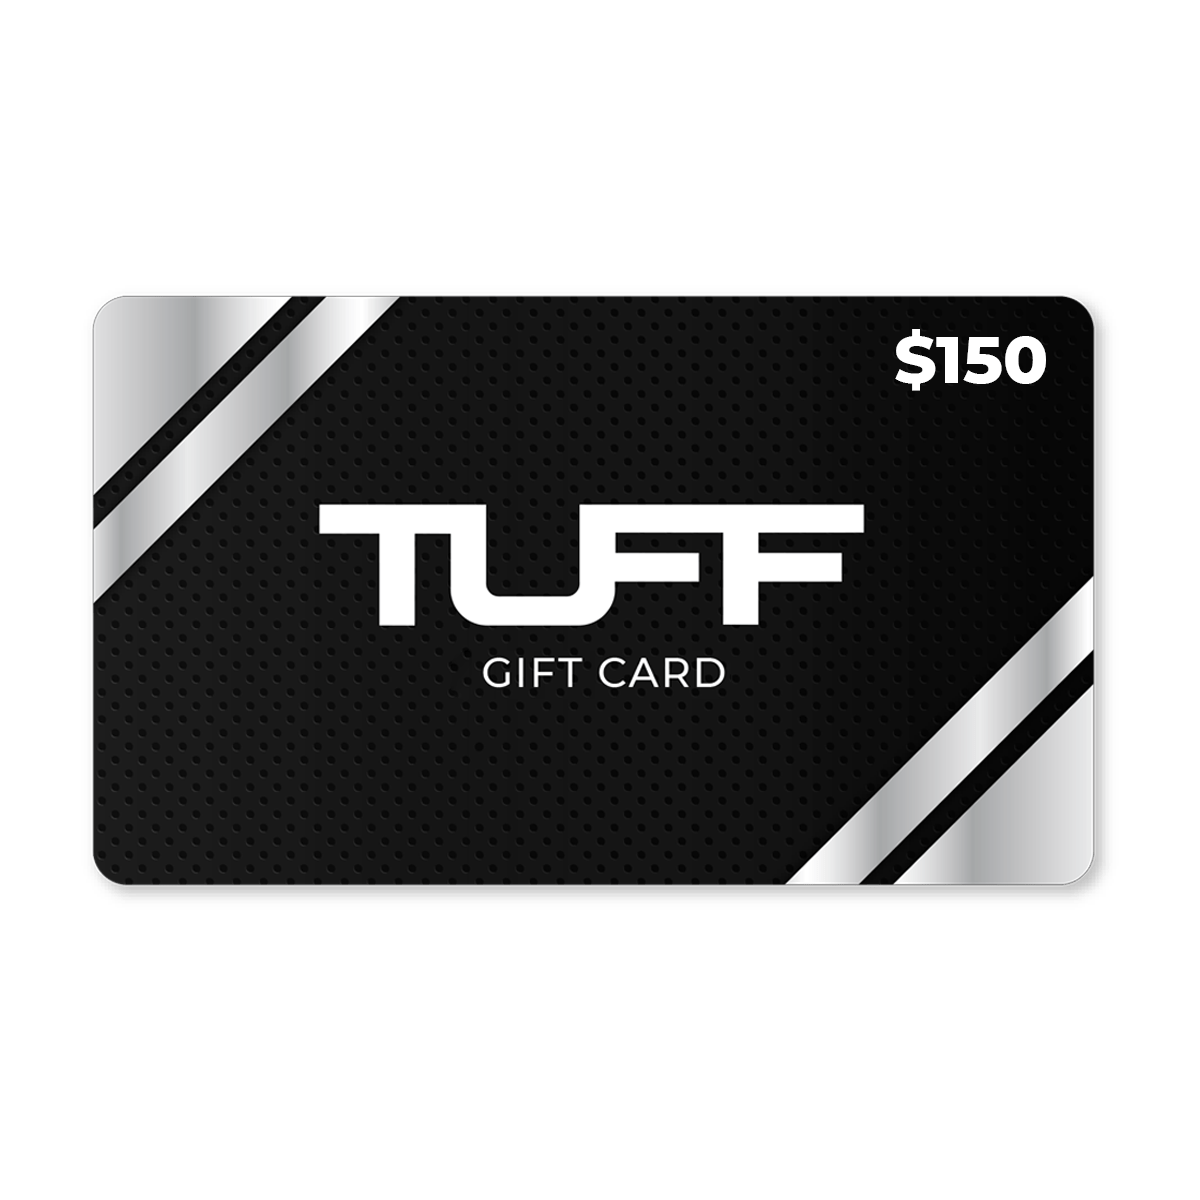 TuffWraps Gift Card $150.00 TUFF Gift Card